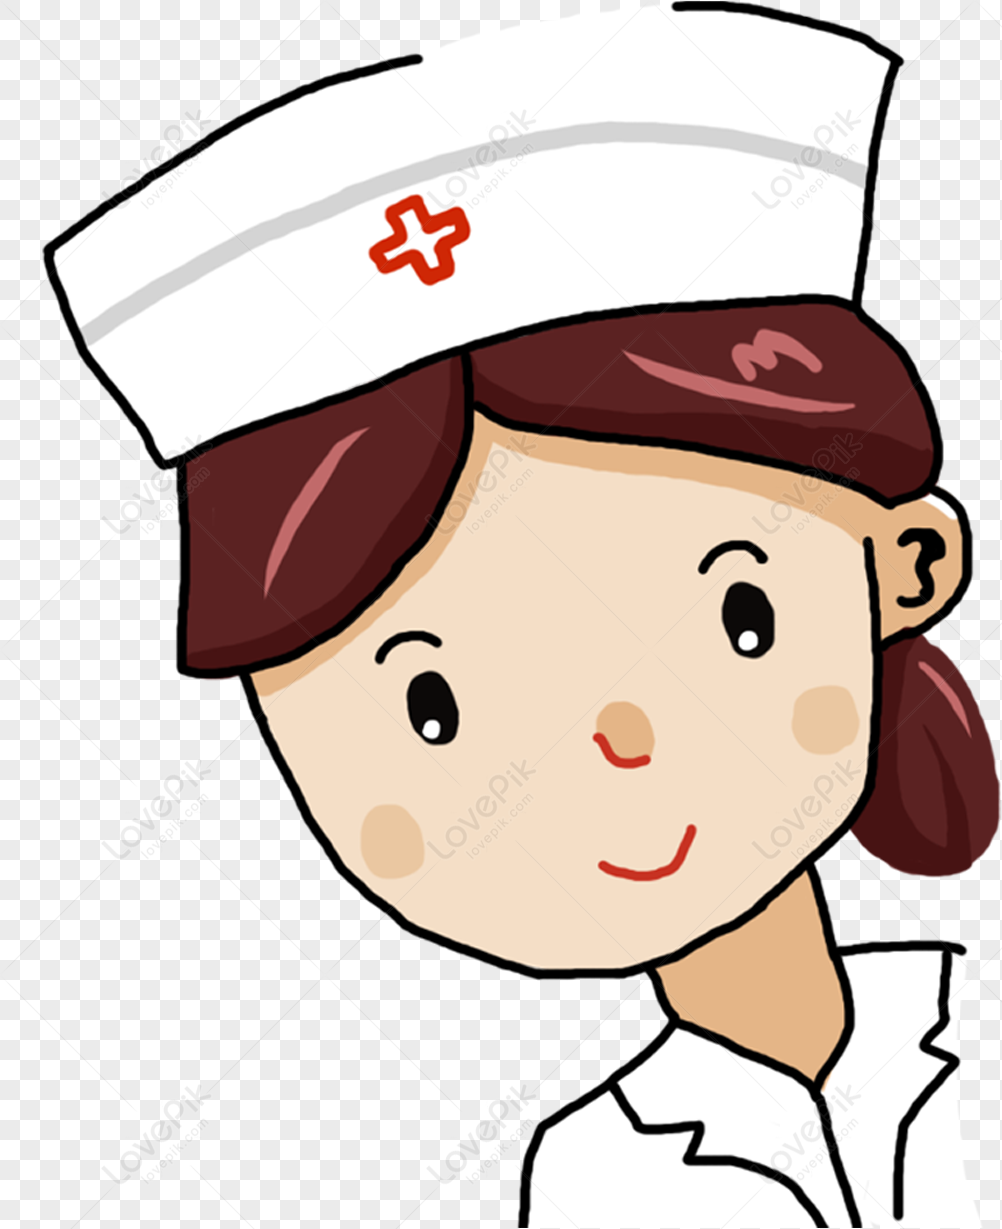 Nurse Clipart Images - Registered Nurse Clip Art - Free - Clip Art Library